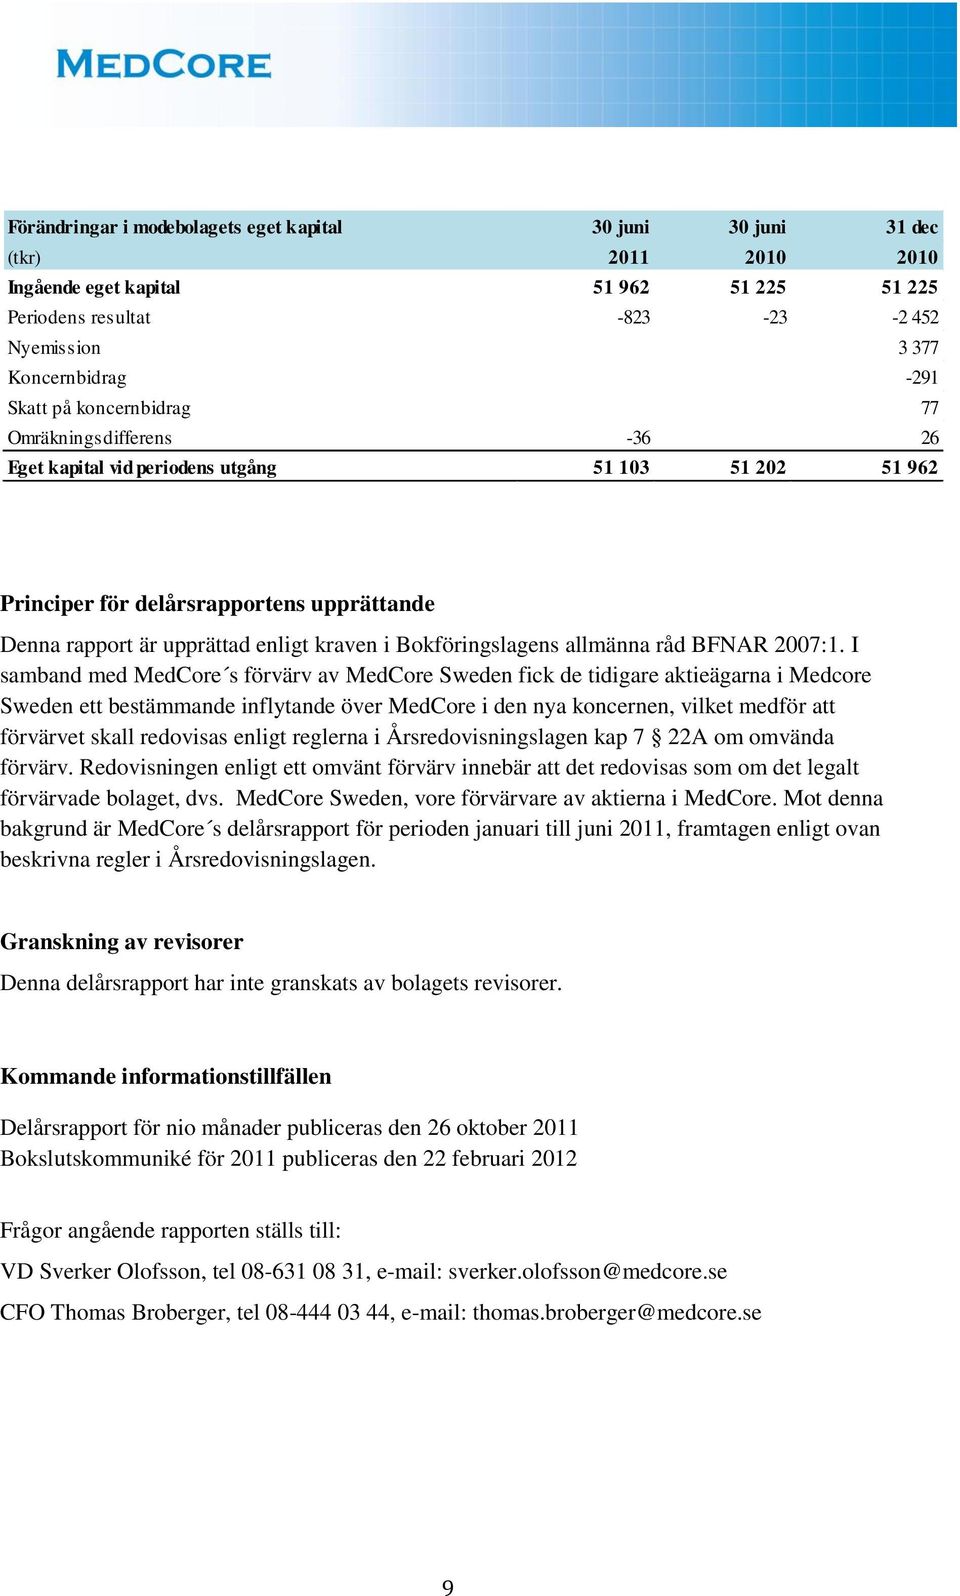 Bokföringslagens allmänna råd BFNAR 2007:1.